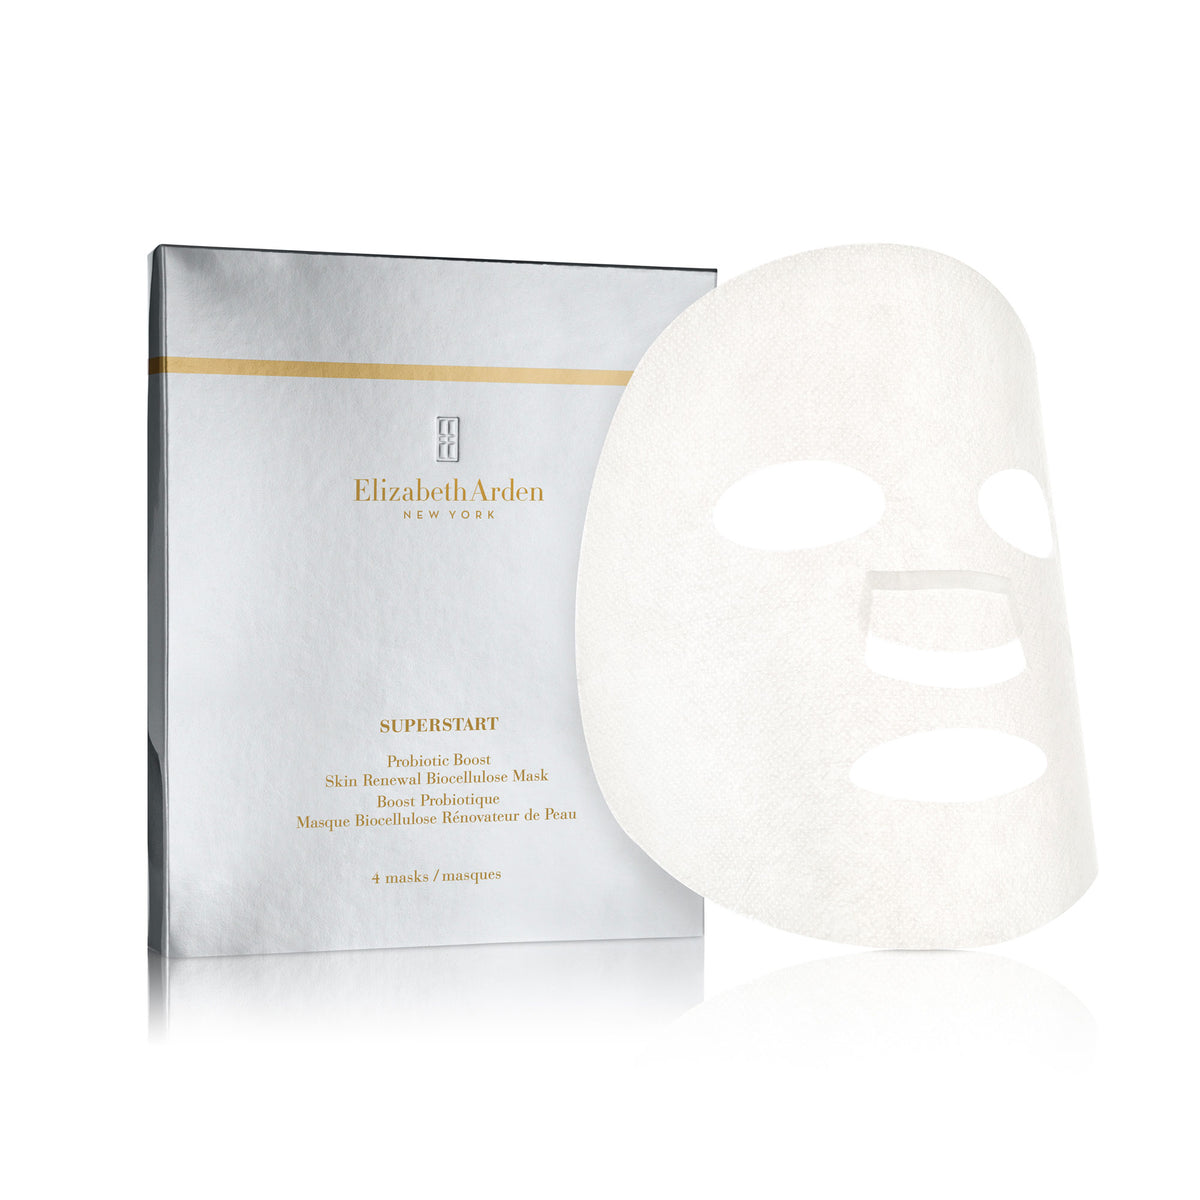 SUPERSTART Probiotic Boost Skin Renewal Biocellulose Mask - 4 Masks/18ml